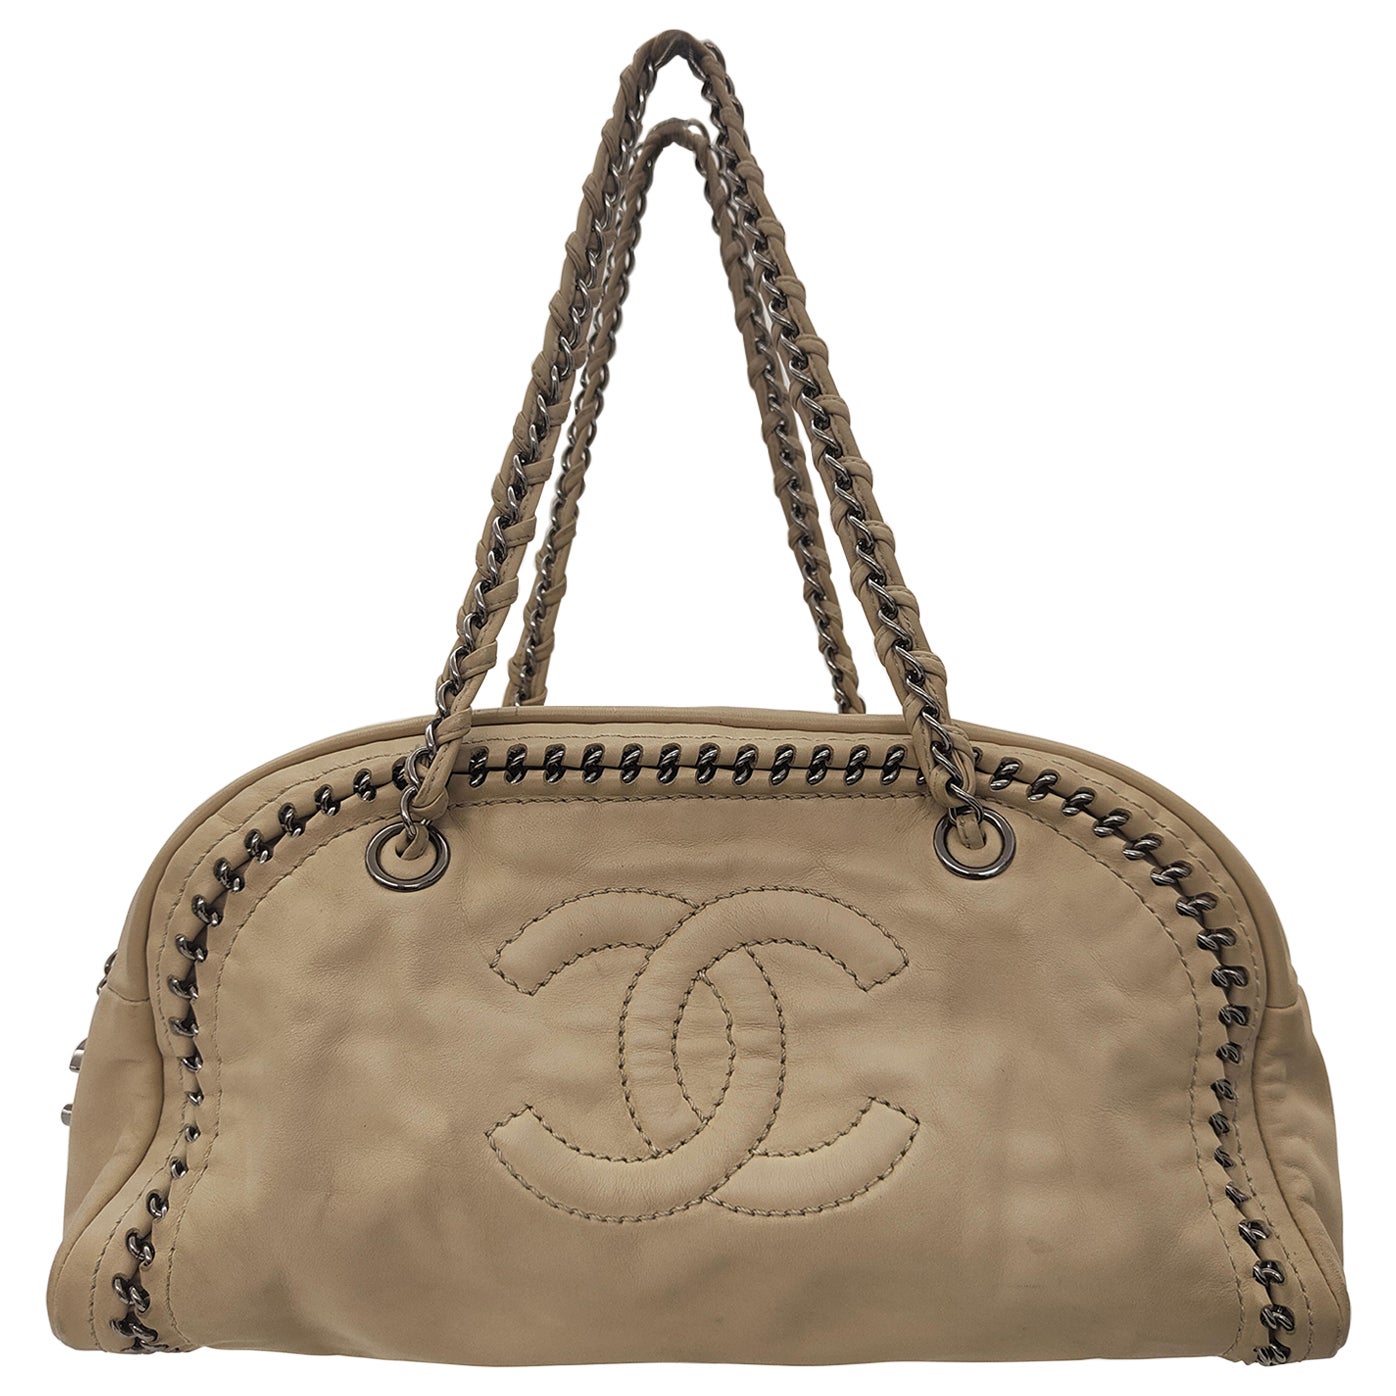 Chanel beige leather silver hardware shoulder bag